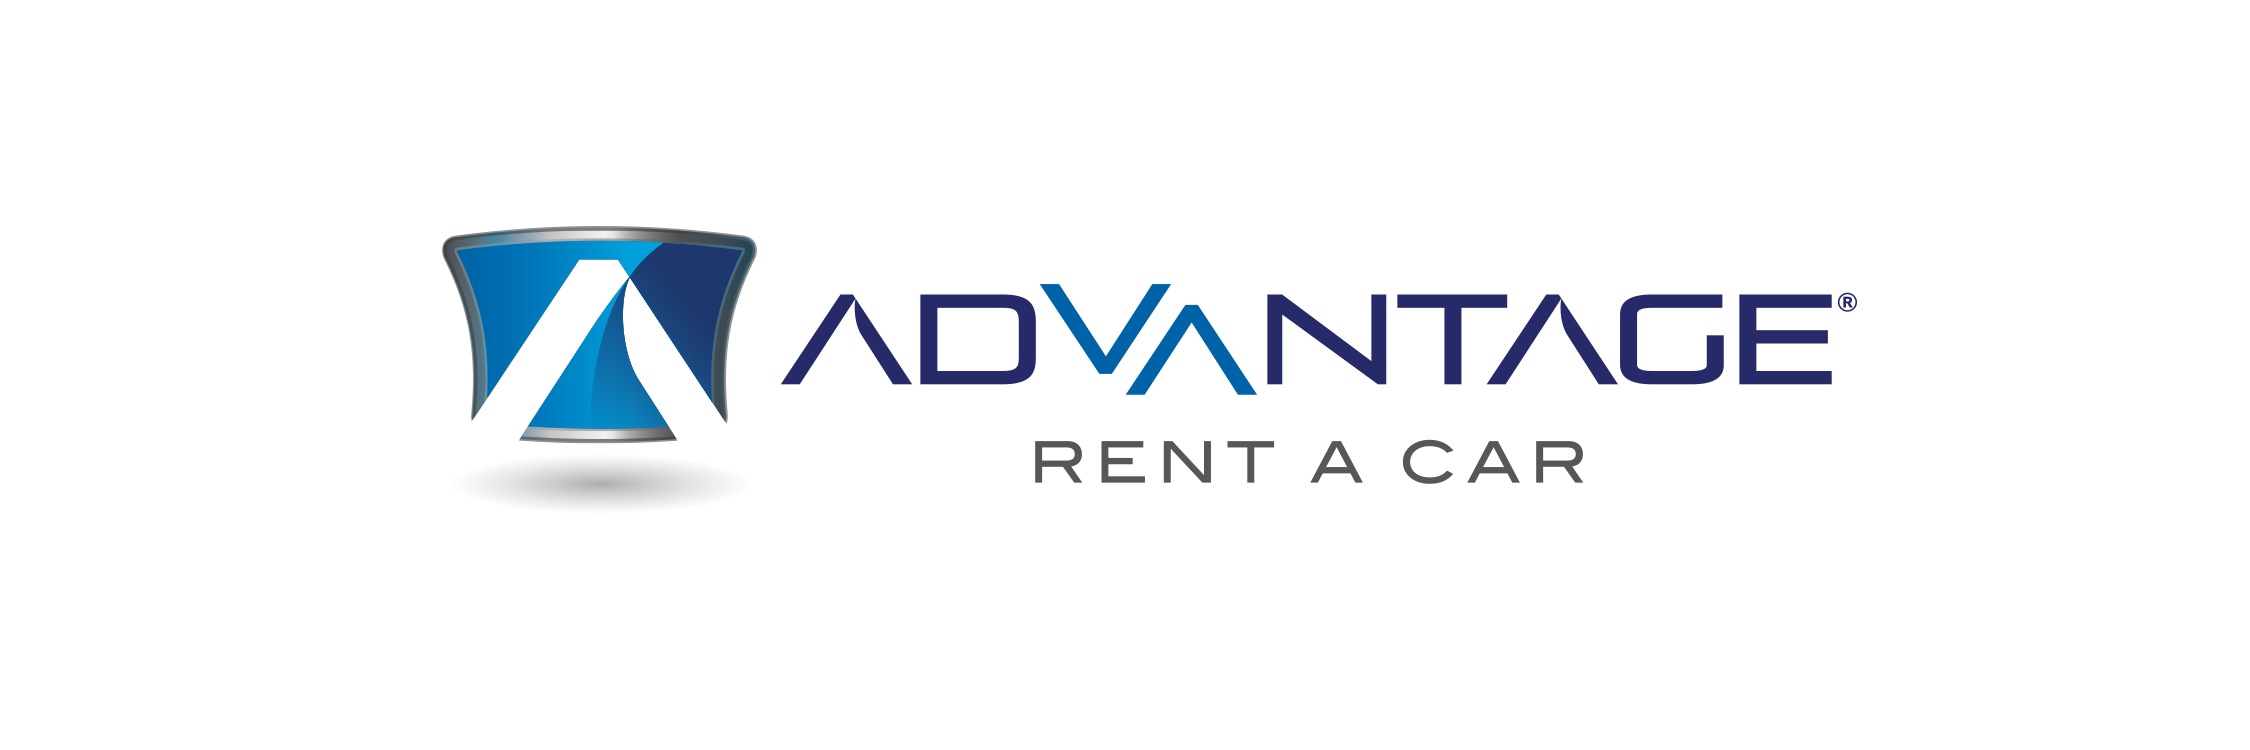 Advantage Rent A Car Partners with David Hale Sylvester